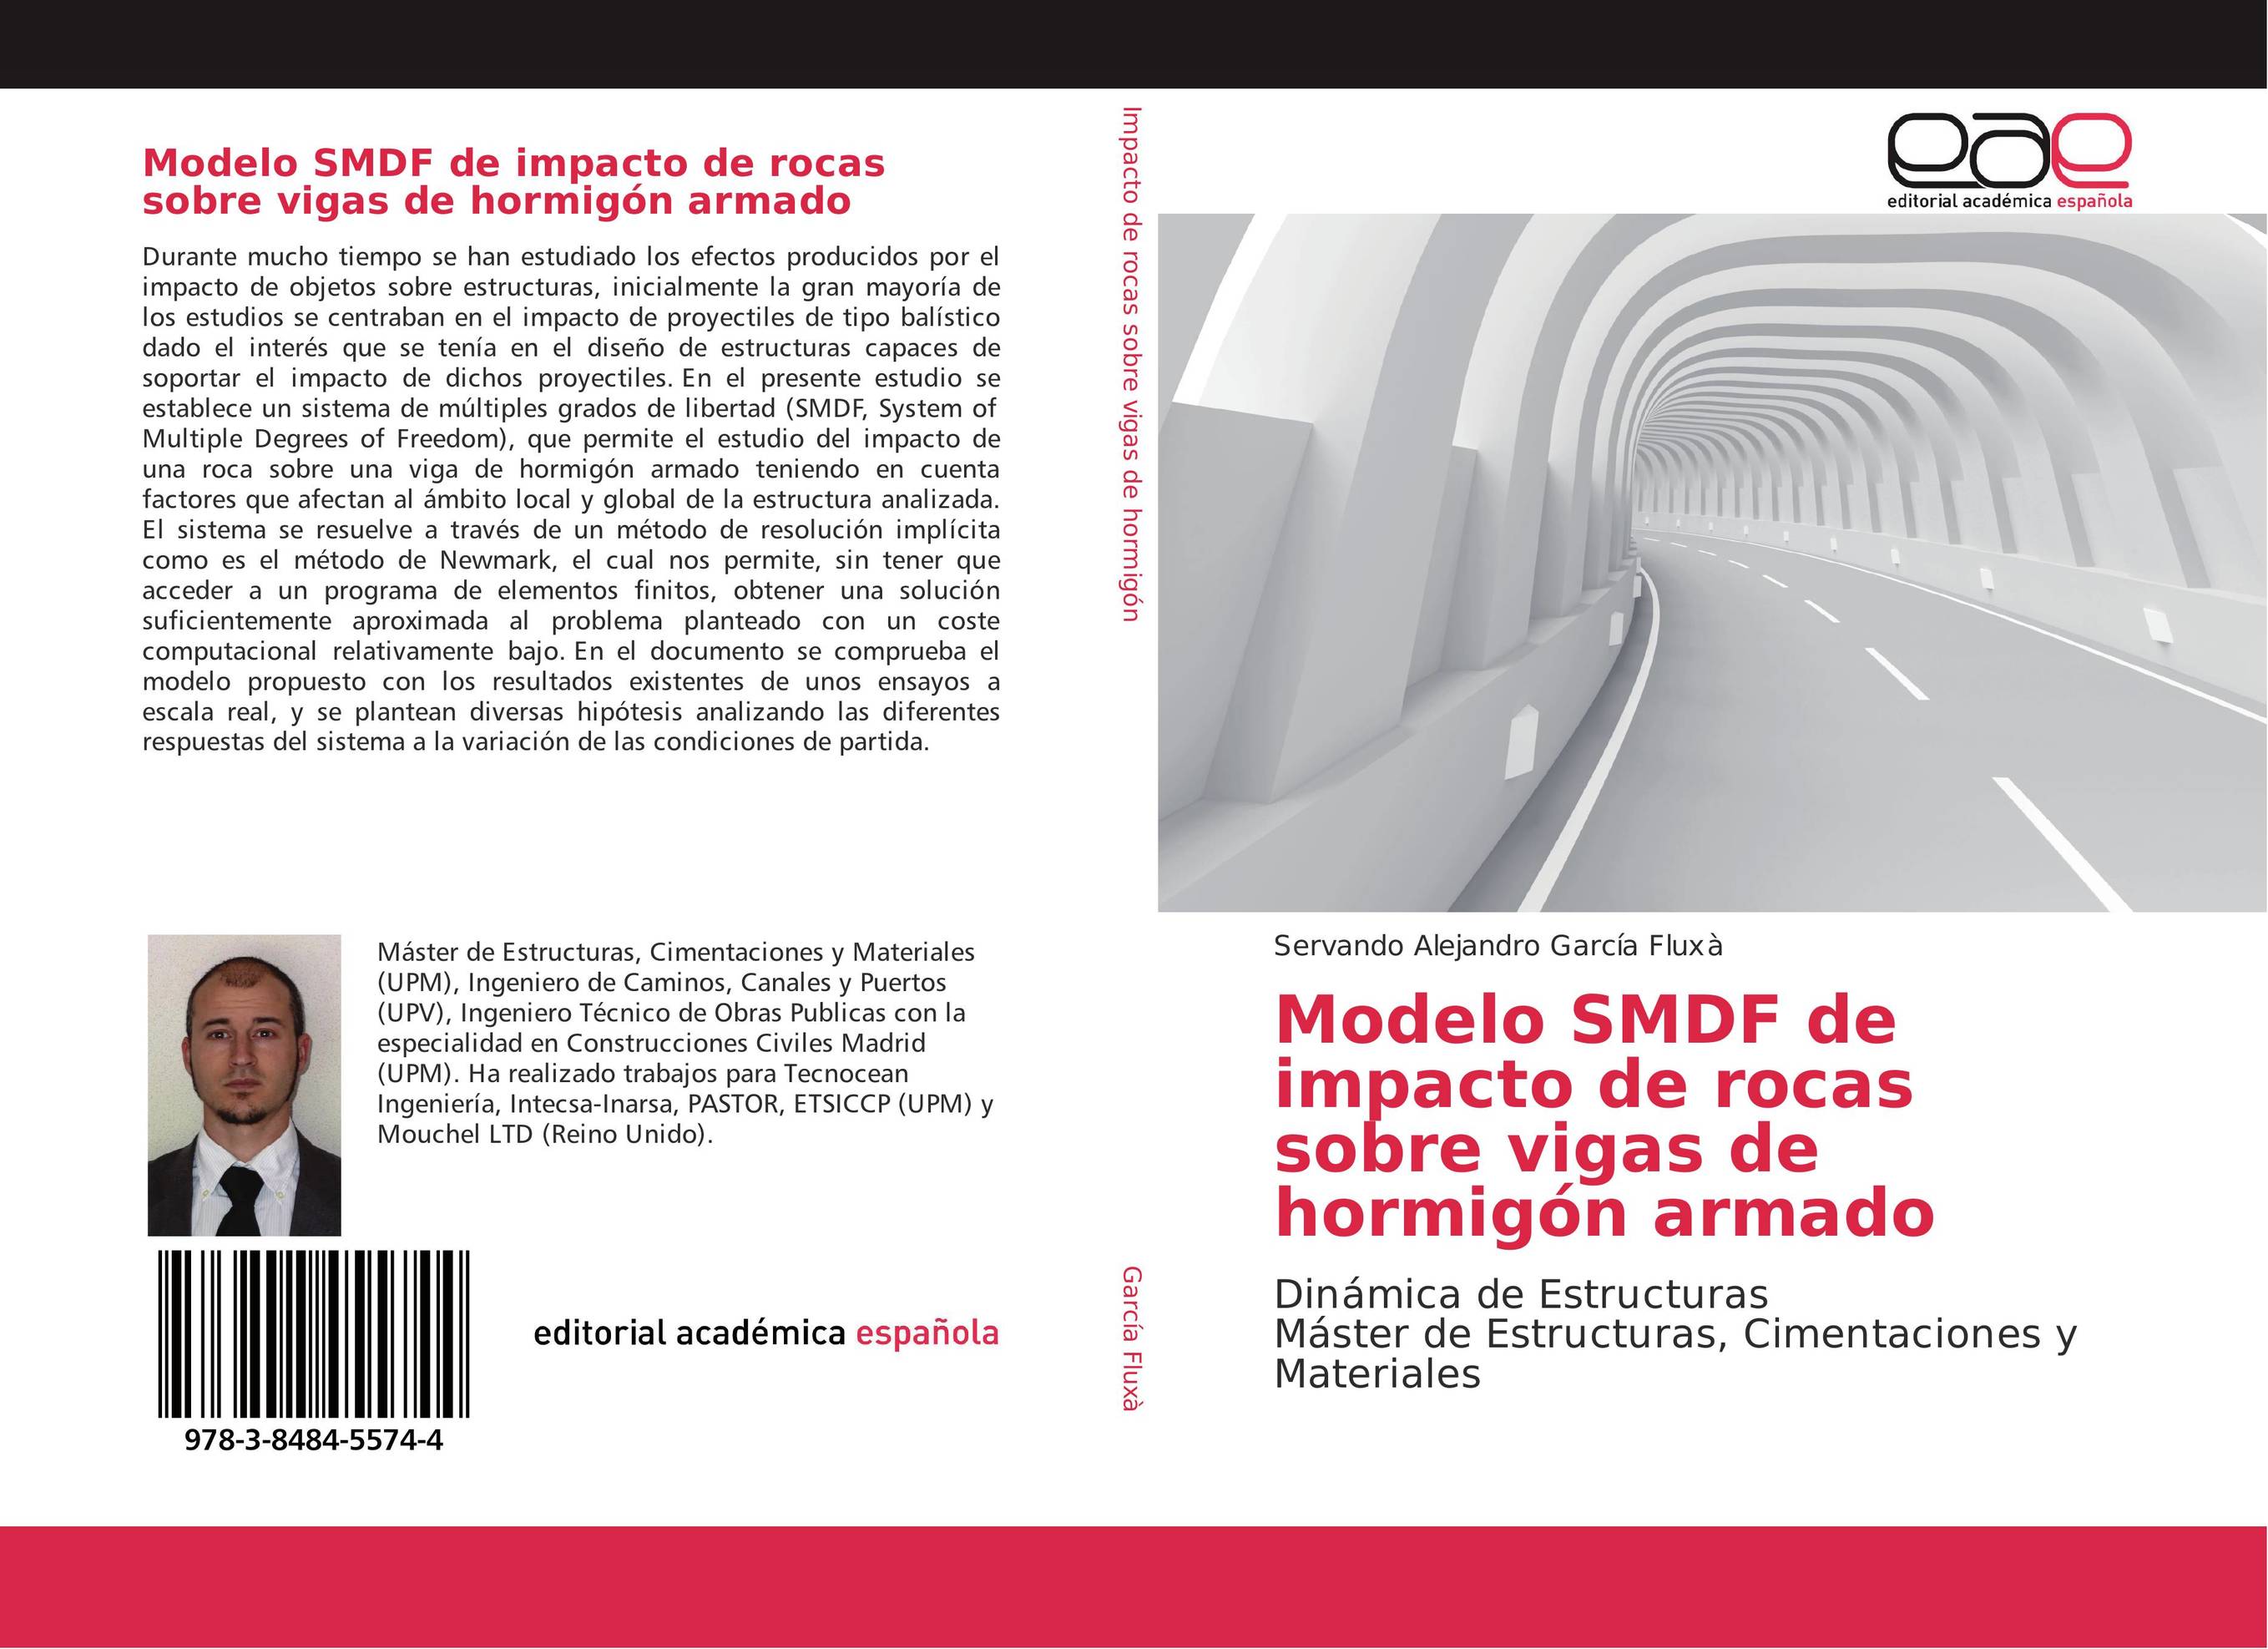 Modelo SMDF de impacto de rocas sobre vigas de hormigón armado